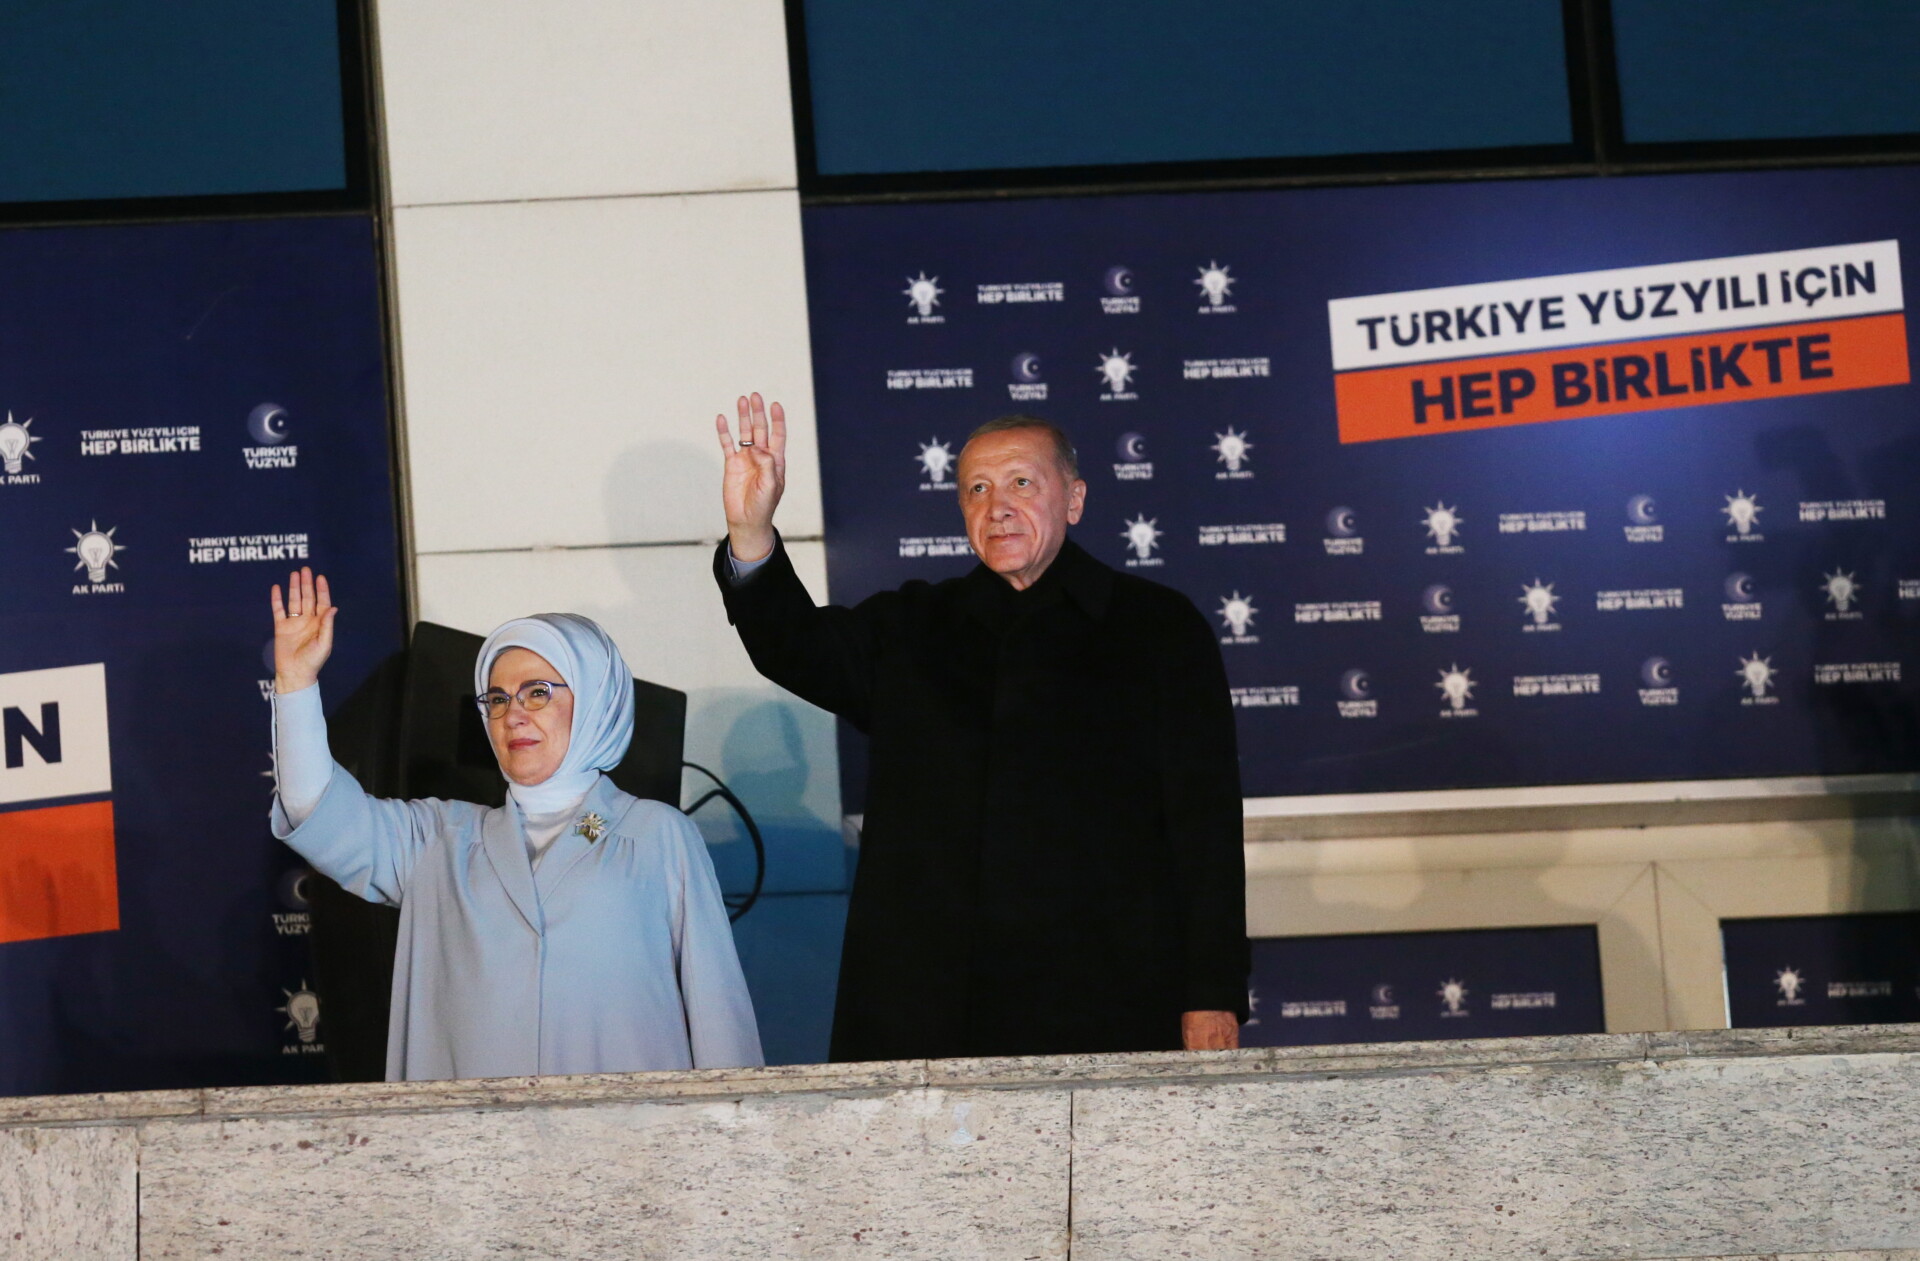 Εμινέ και Ρετζέπ Ταγίπ Ερντογάν χαιρετούν τα πλήθη από το μπαλκόνι όπου μίλησε ο Τούρκος πρόεδρος μετά τις εκλογές στην Τουρκία © EPA/Necati Savas